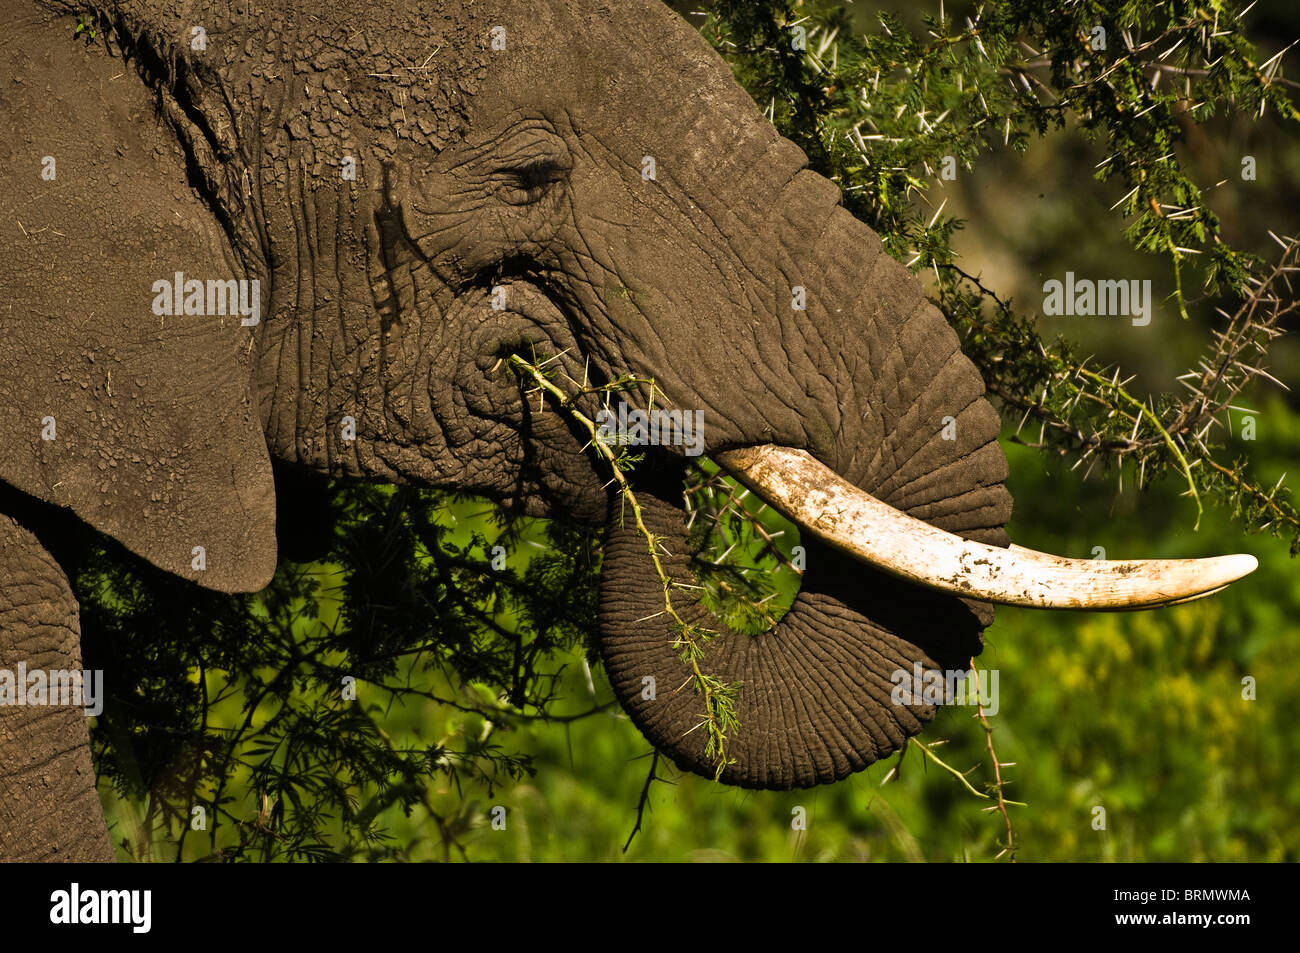 L'éléphant africain (Loxodonta africana) avec son tronc recroquevillé dans sa bouche manger des branches d'épine Banque D'Images